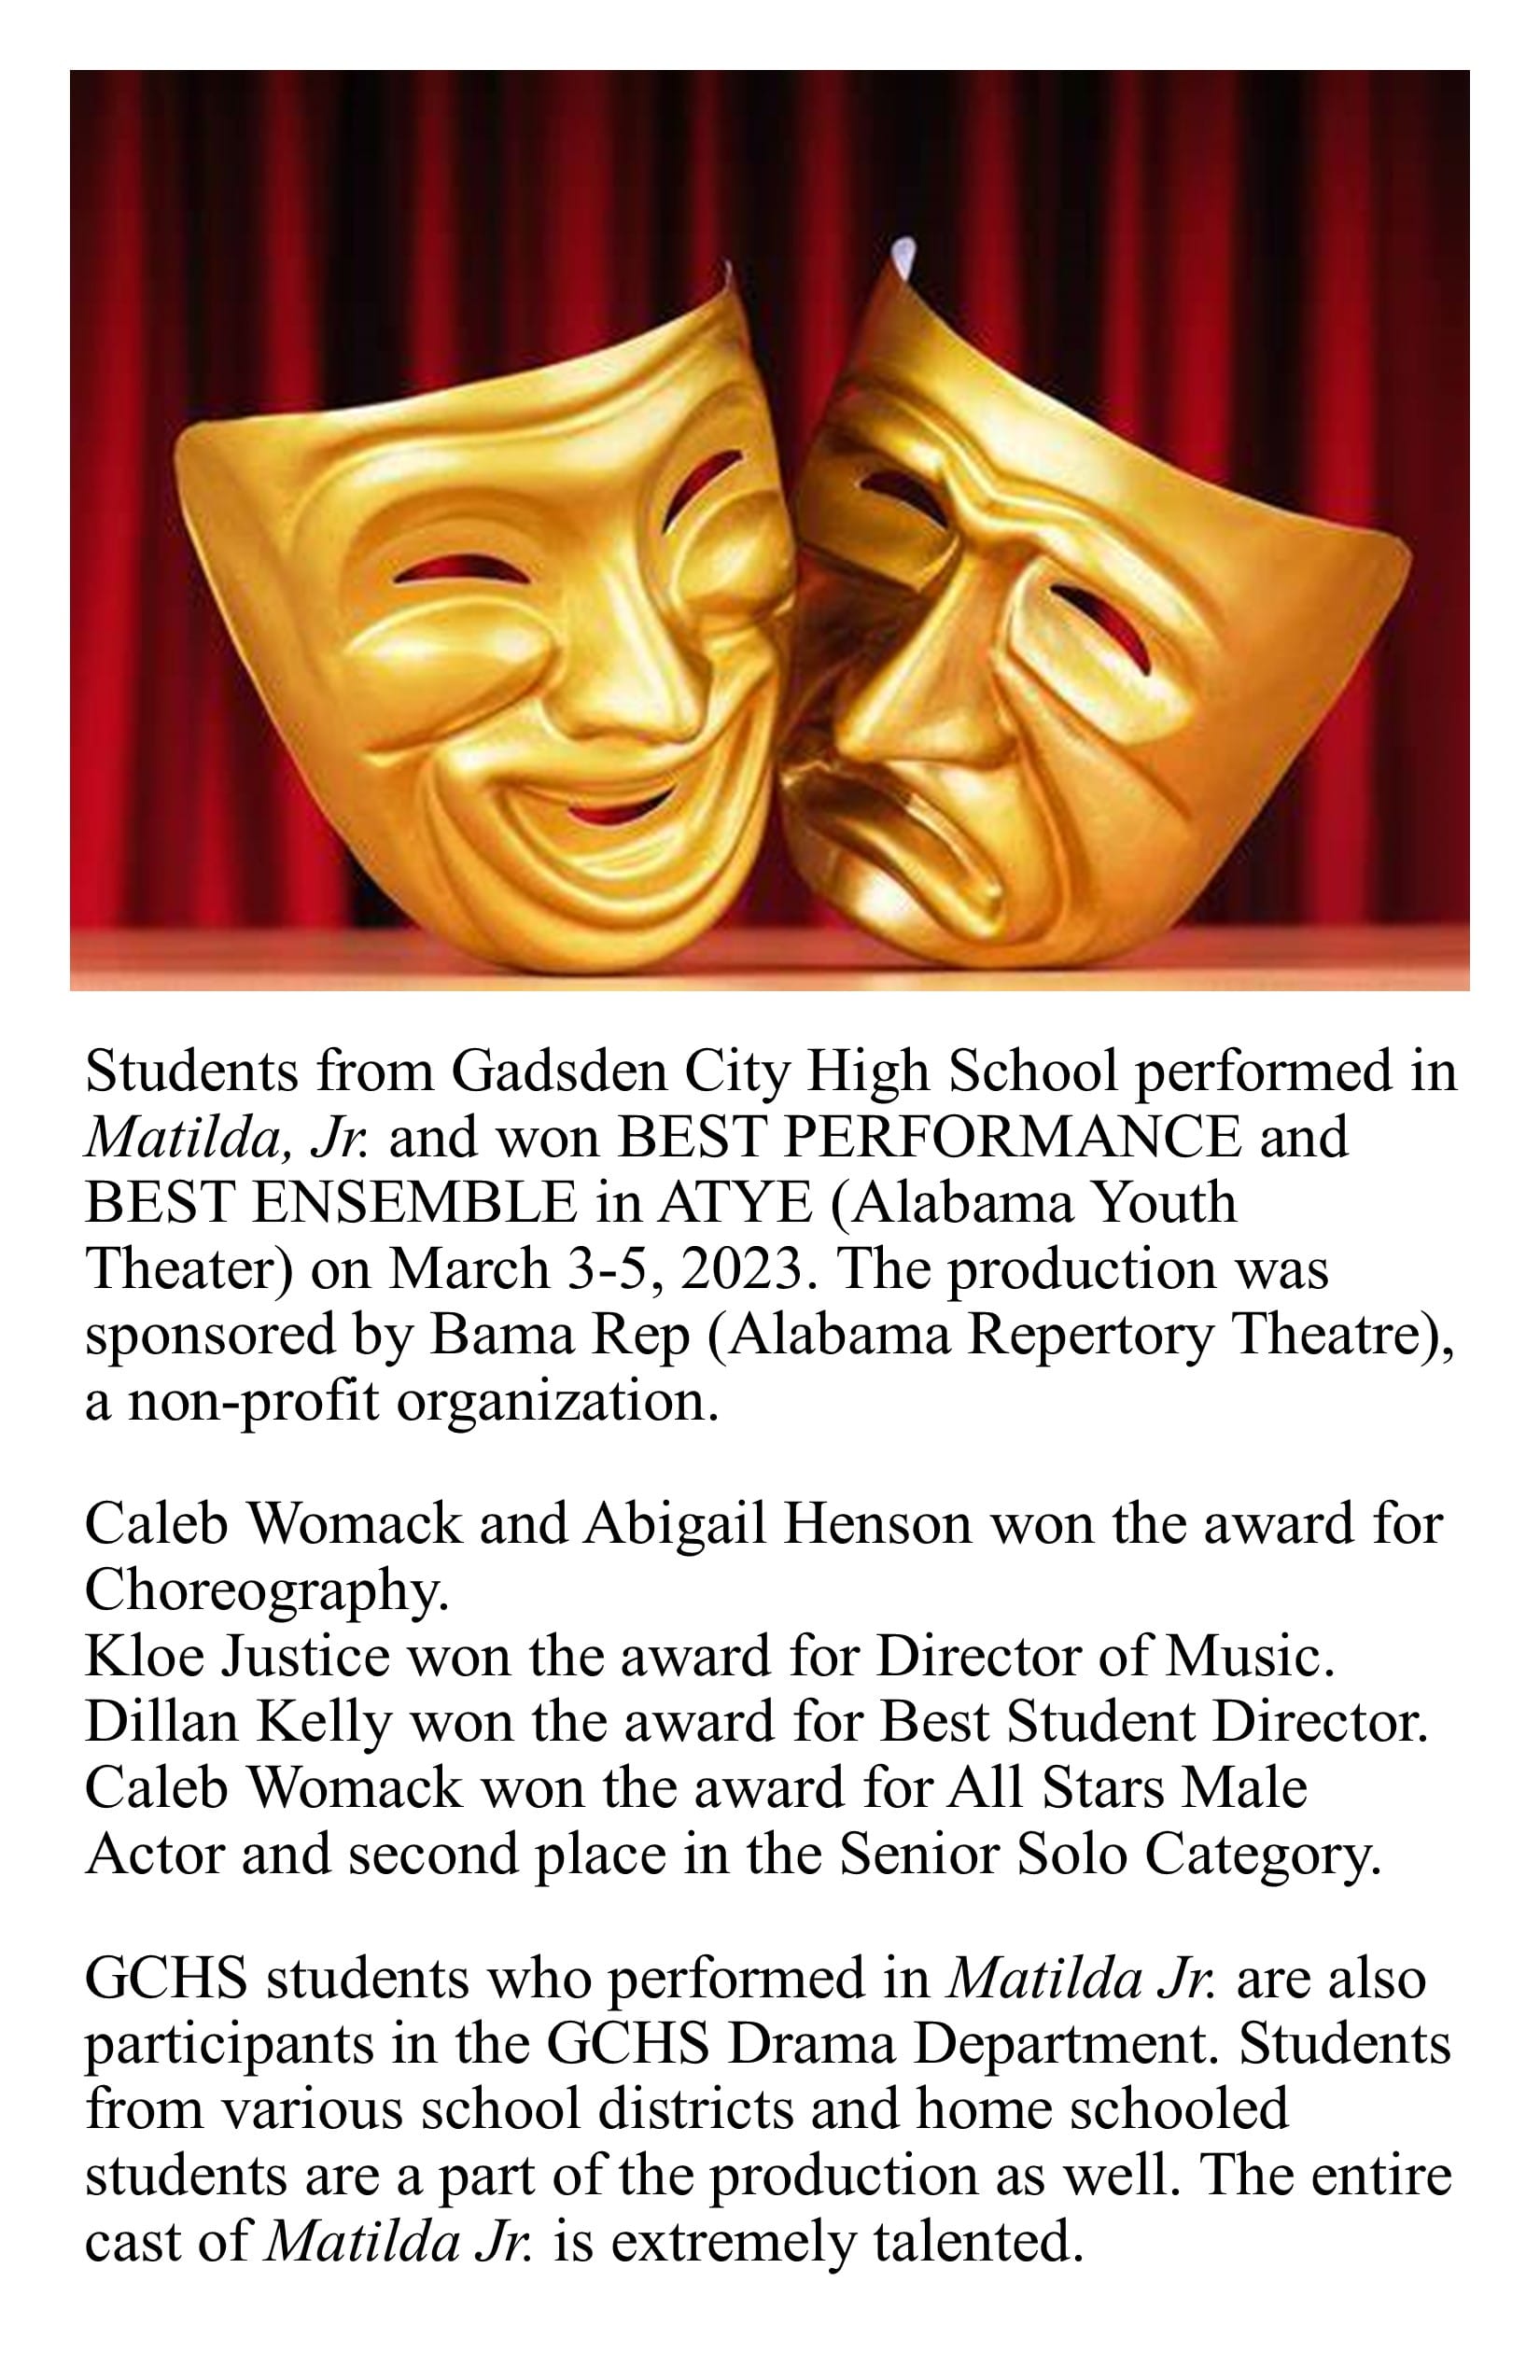 Matilda Jr. Performance and Awards